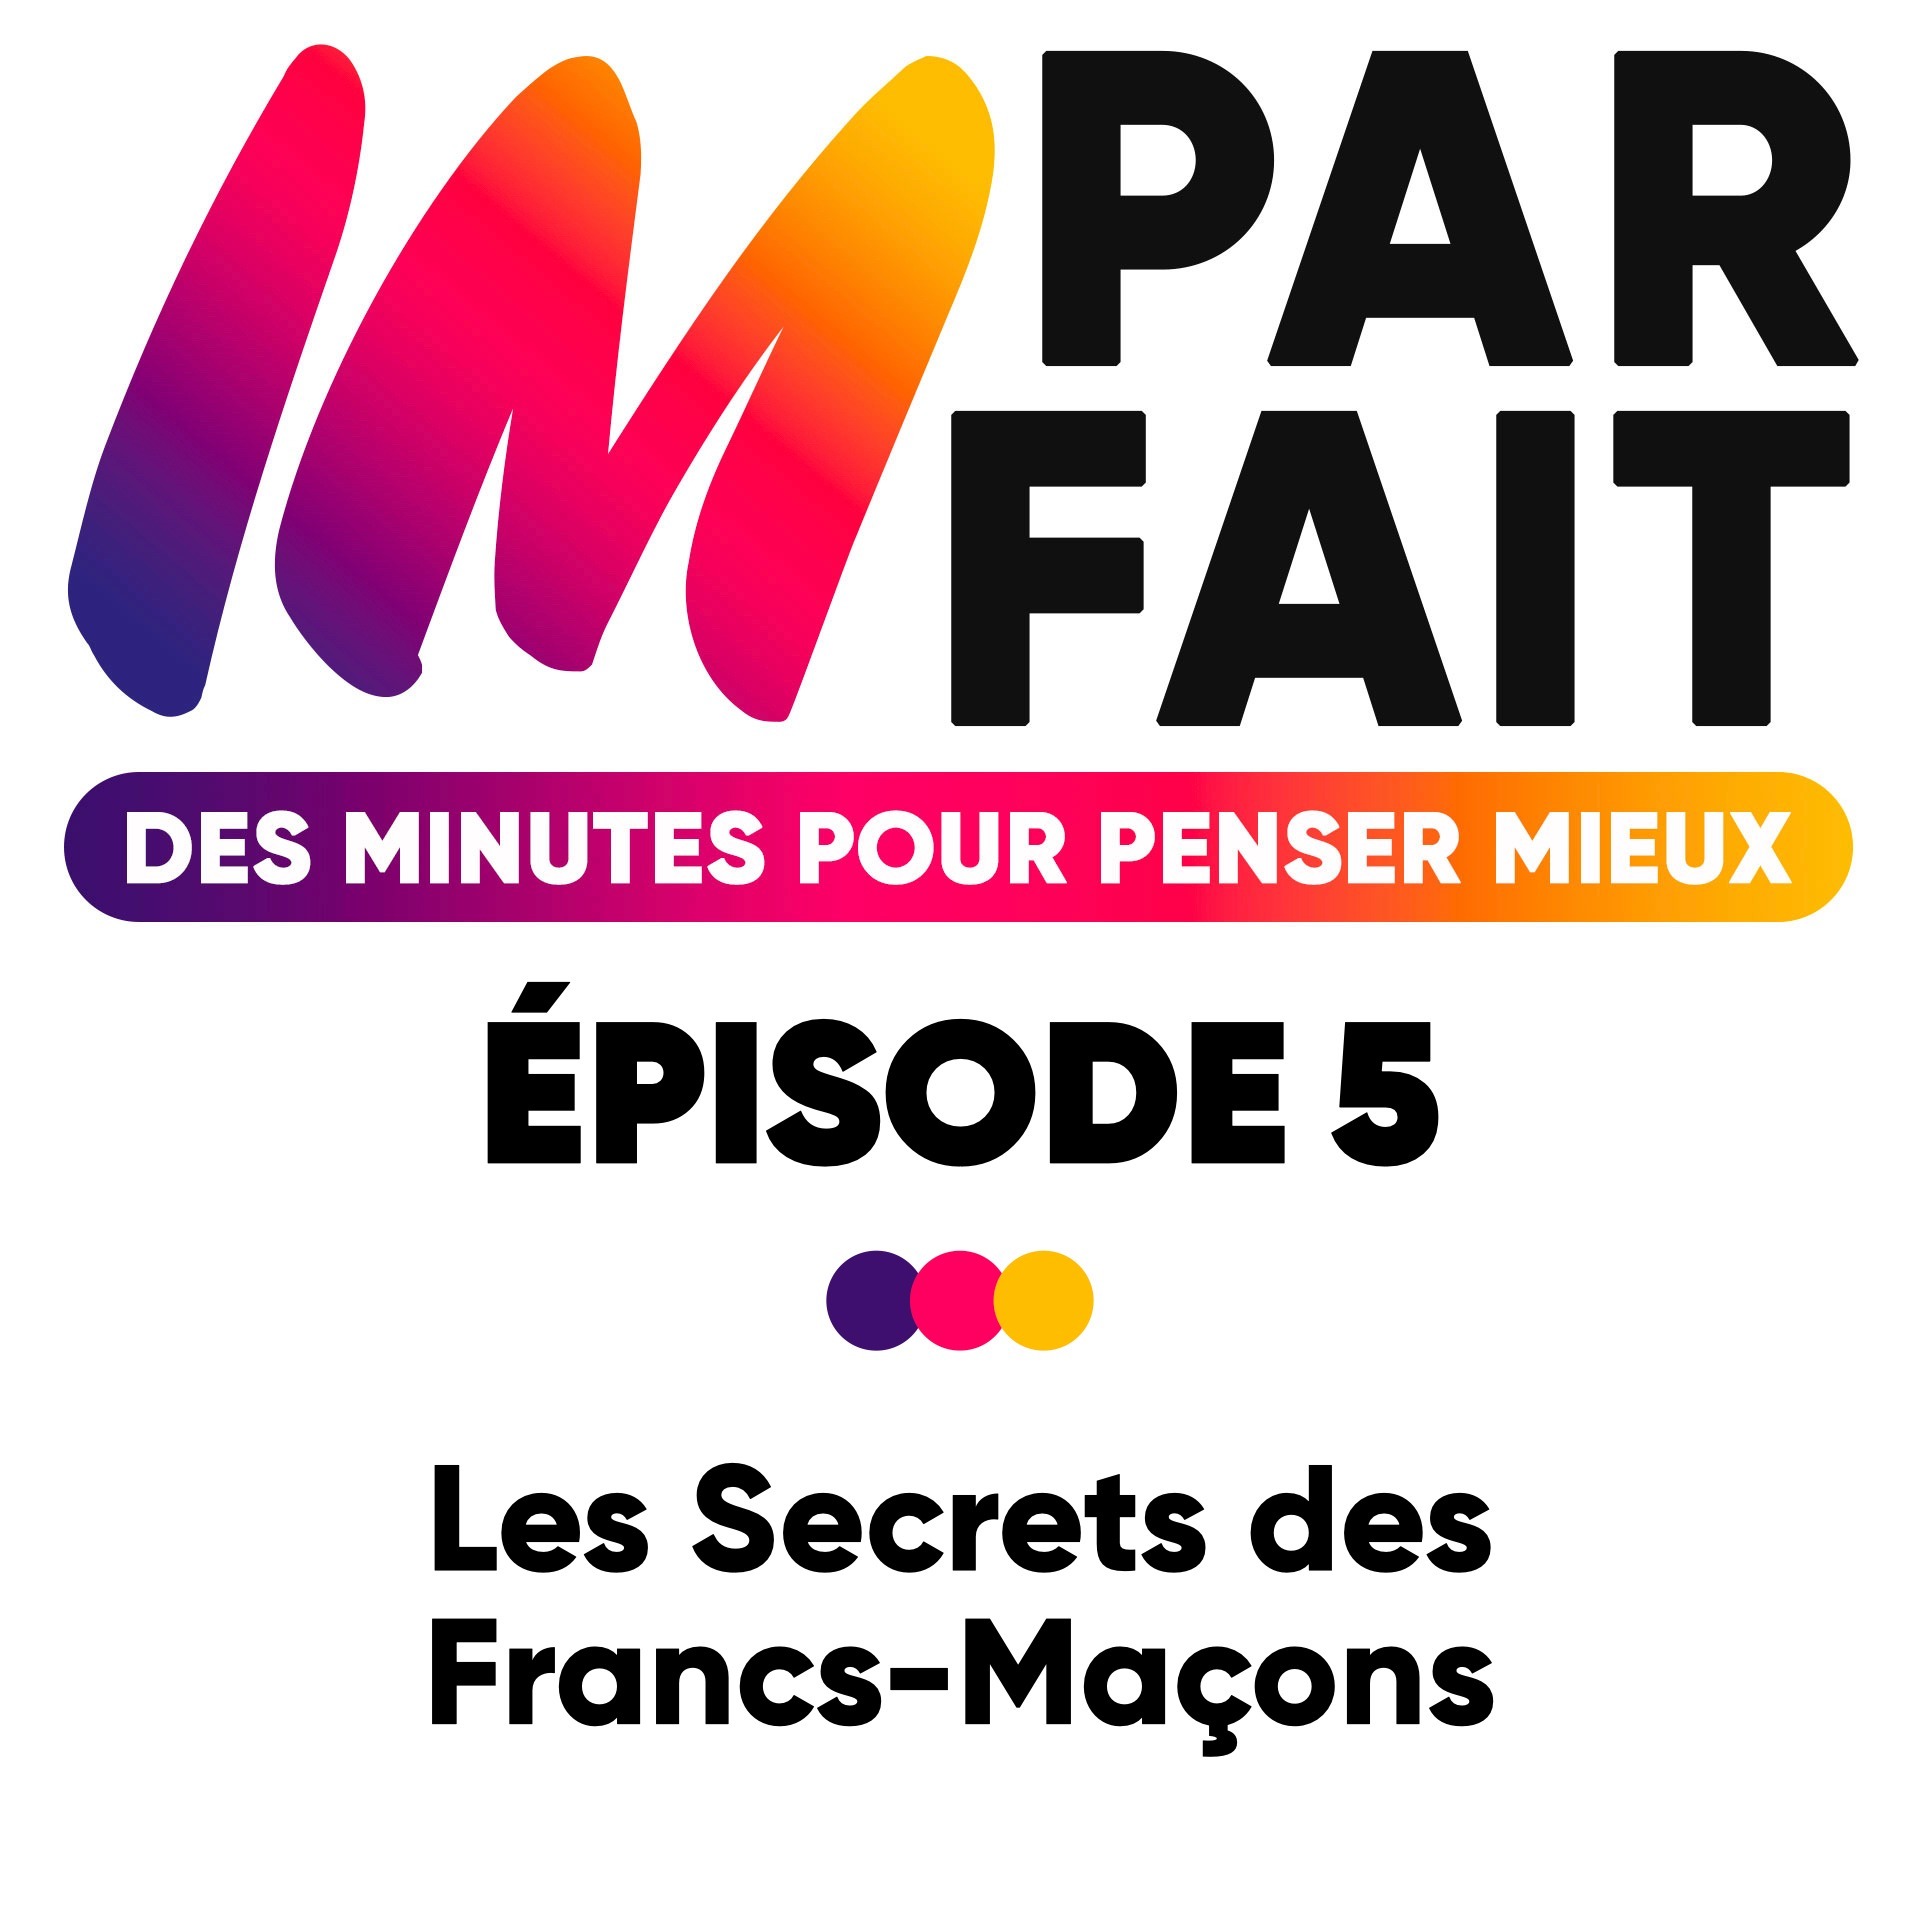 Les secrets des Franc-Maçons - Episode 5